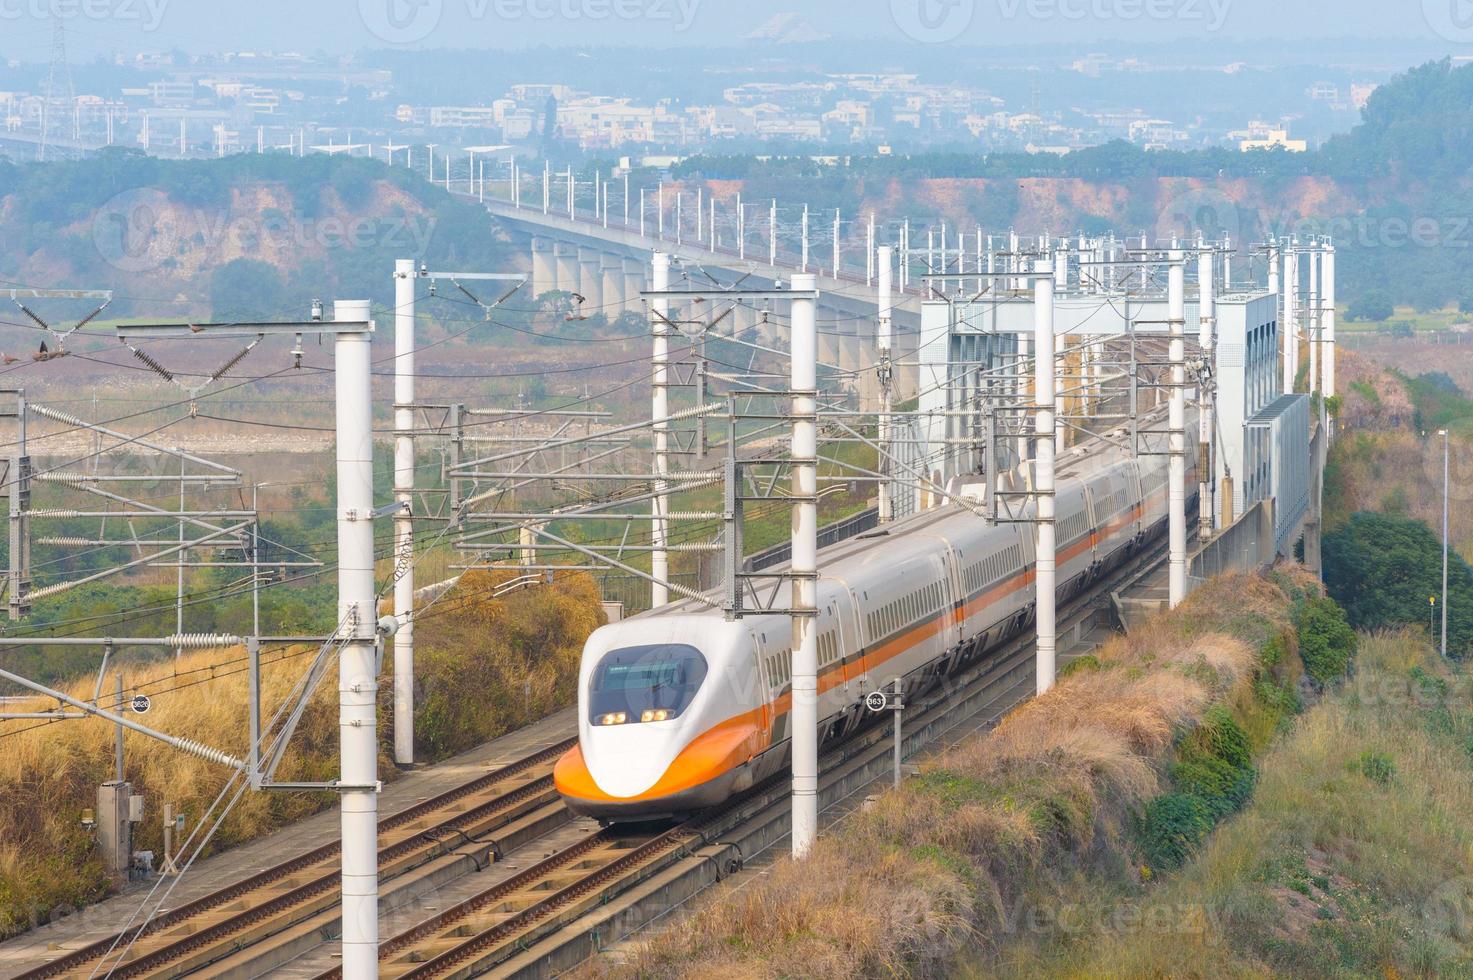 ferrovia de alta velocidade de taiwan em taichung, taiwan foto